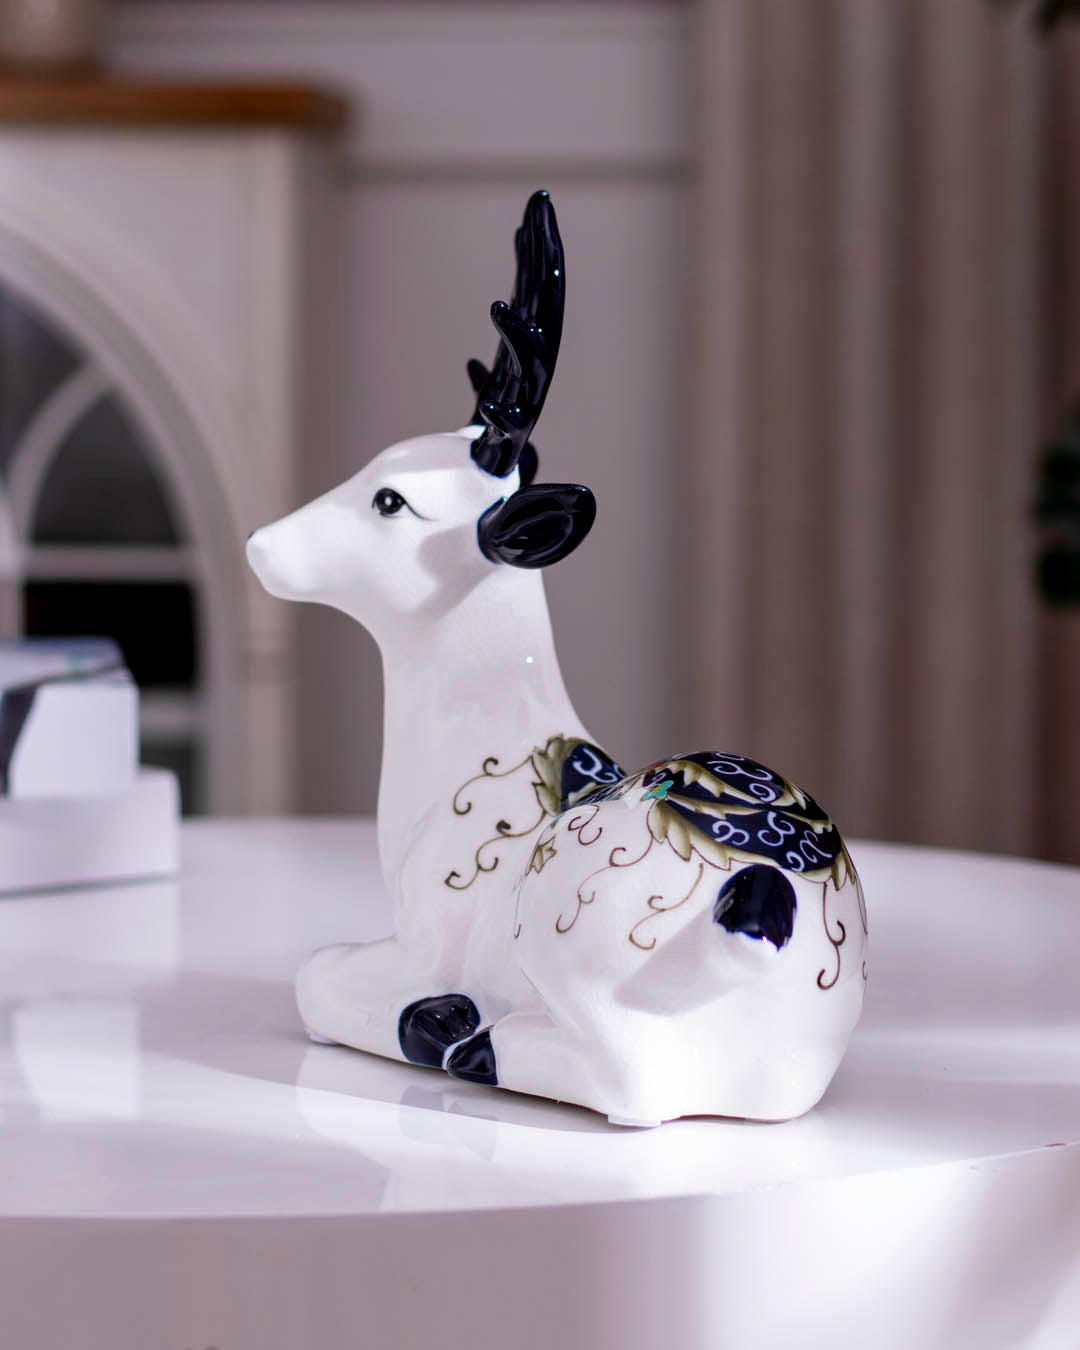 Porcelain Reindeer Sculptures - Set of 2